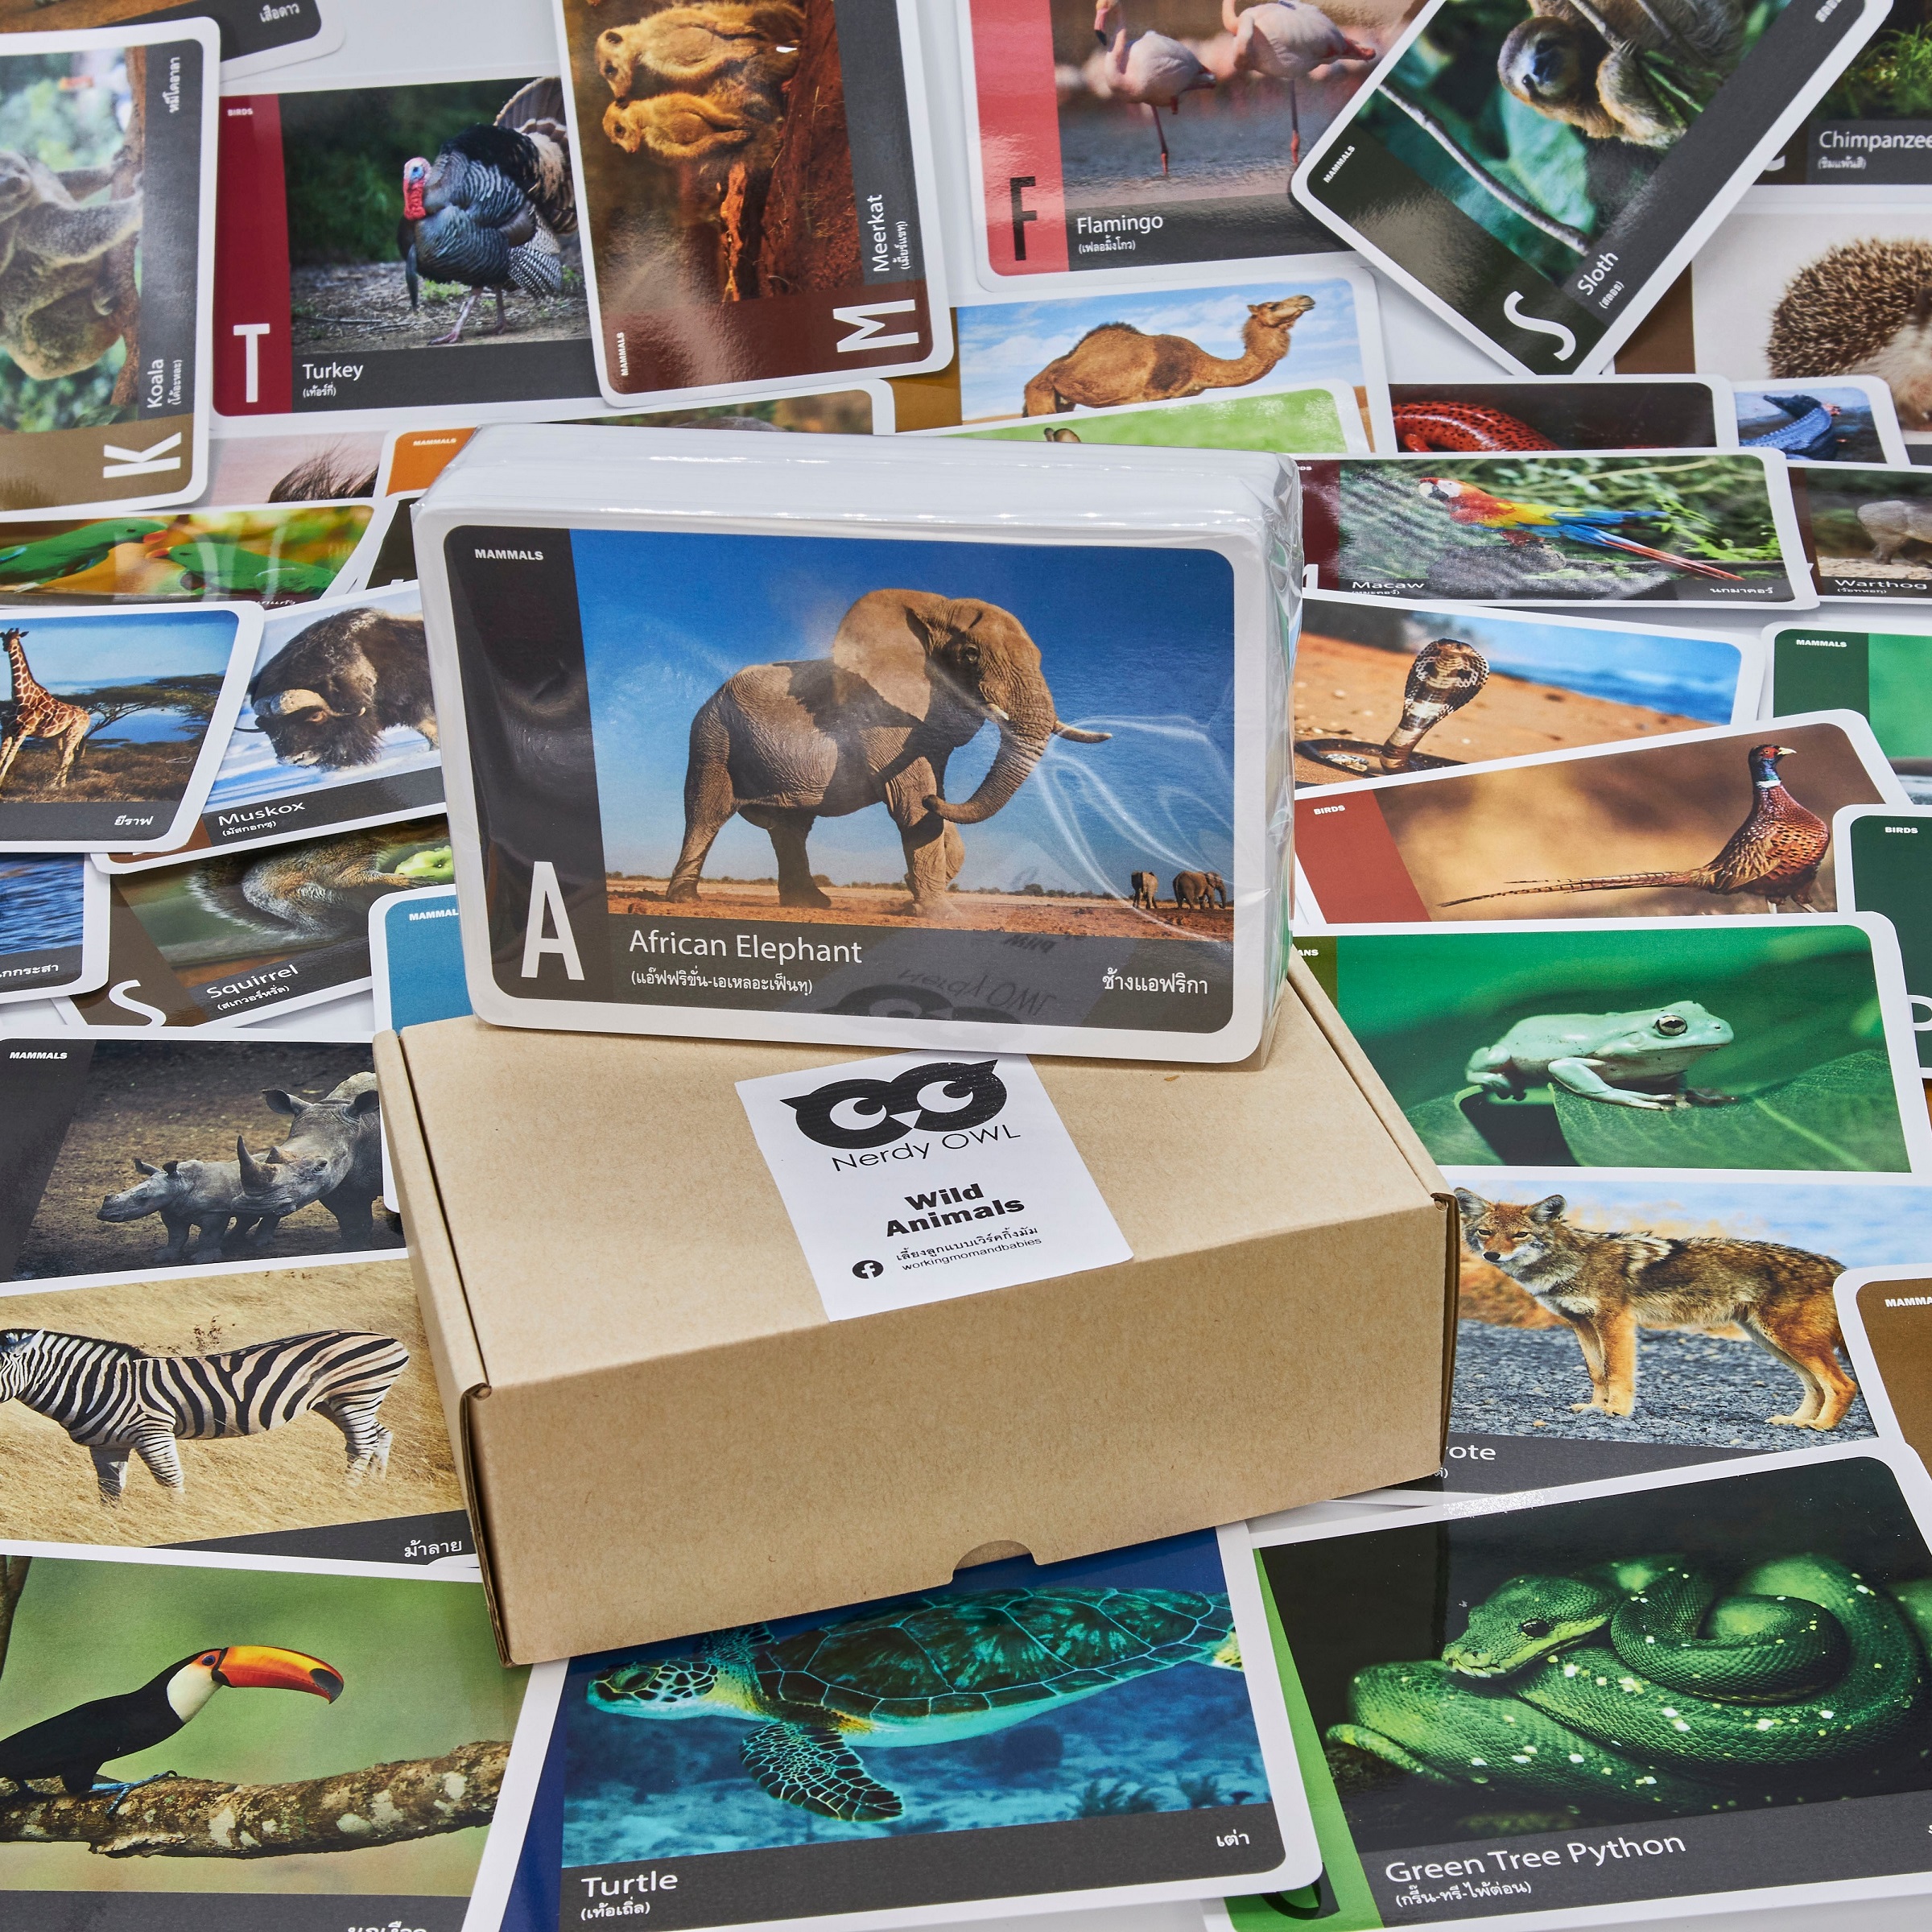 แฟลชการ์ด สัตว์ป่า Flash Cards Wild Animals บัตรคำ การ์ดคำศัพท์ เนิร์ดดี้อาว (Nerdy Owl) จำนวนมากที่สุดถึง 108 ใบ ของเล่นเสริมพัฒนาการ